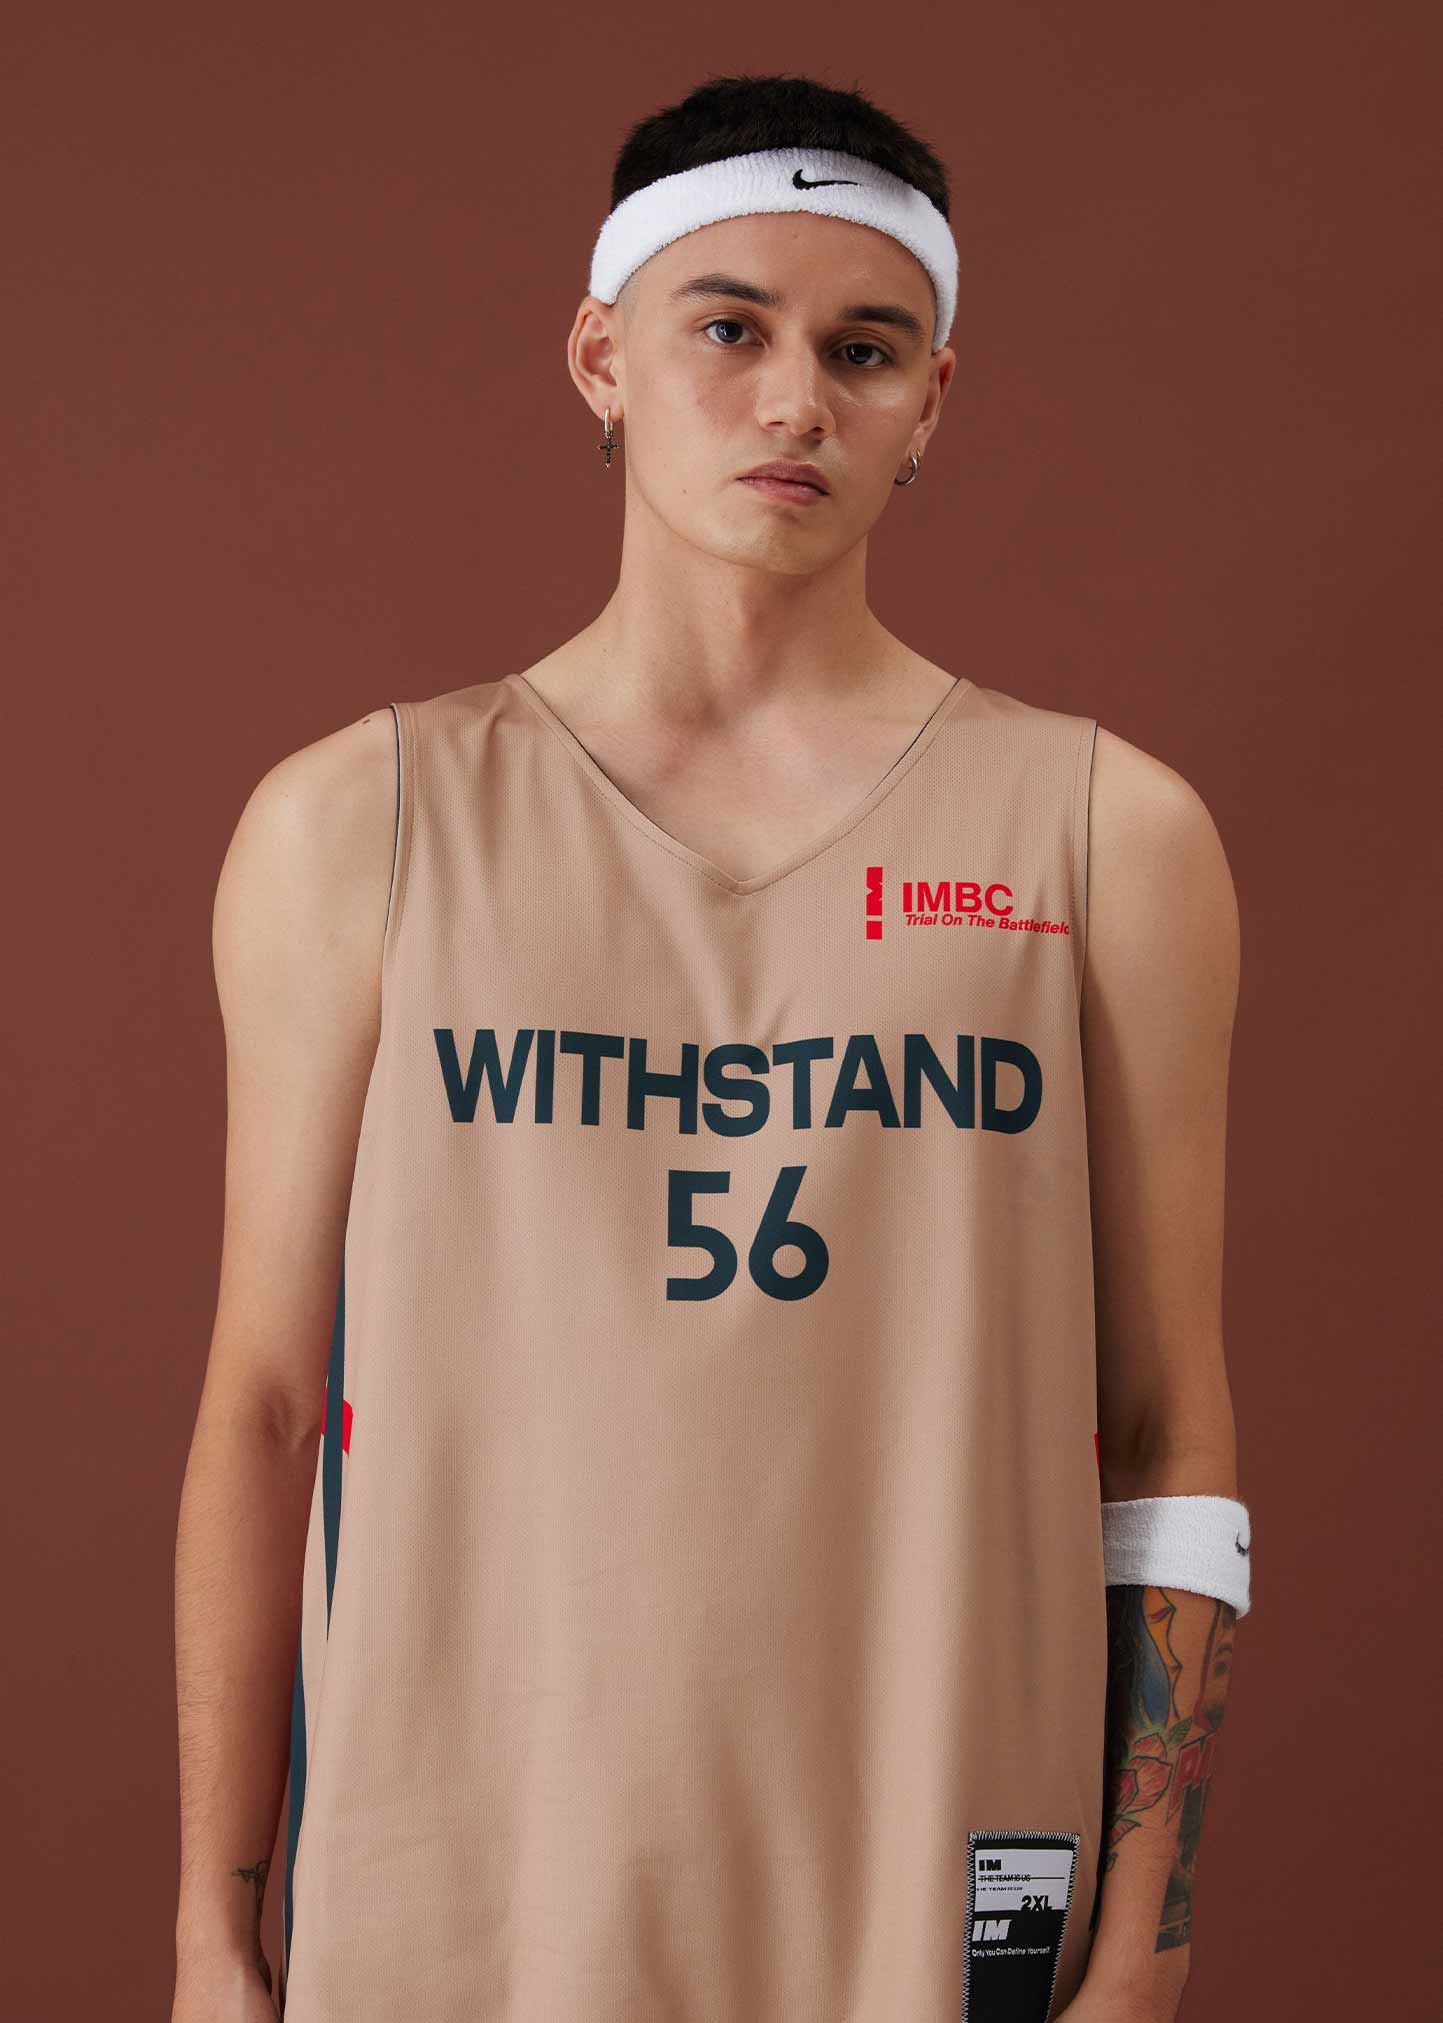 籃球衣設計-籃球衣-籃球球衣訂做-imbc